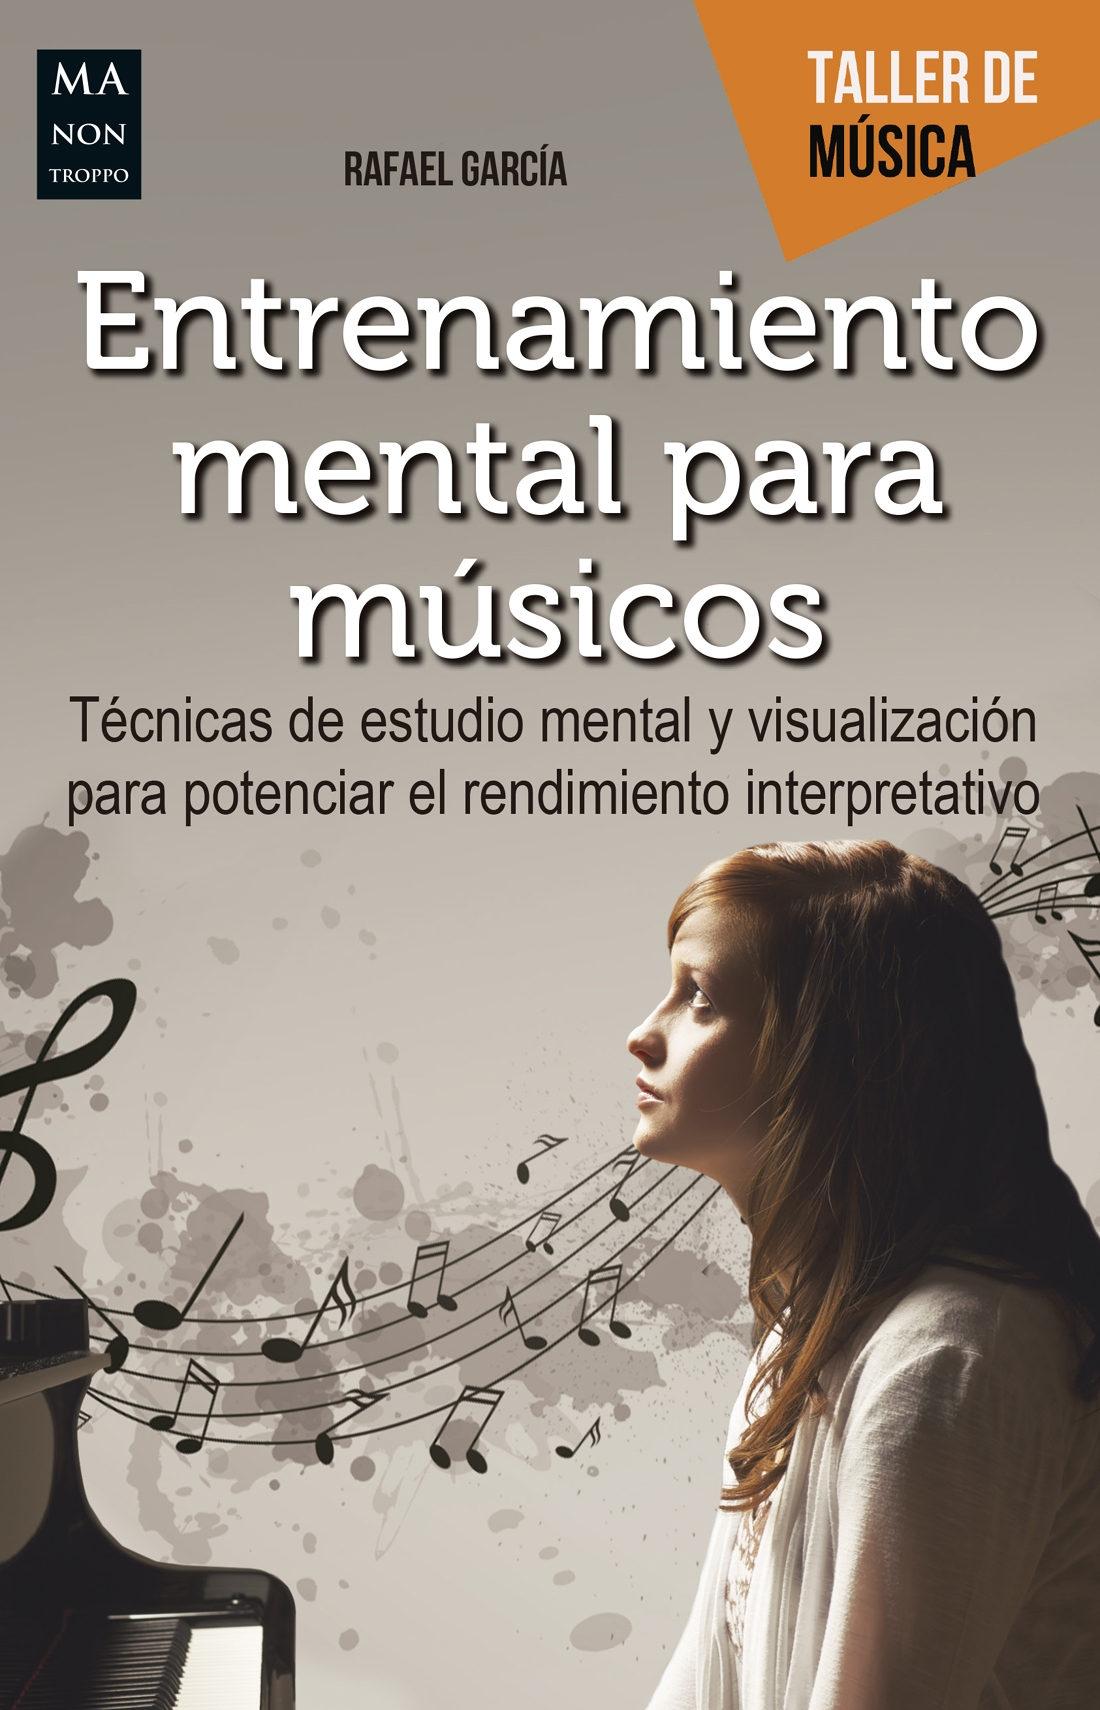 Entrenamiento mental para musicos "Técnicas de estudio mental y visualización para potenciar el rendimiento interpretativo"